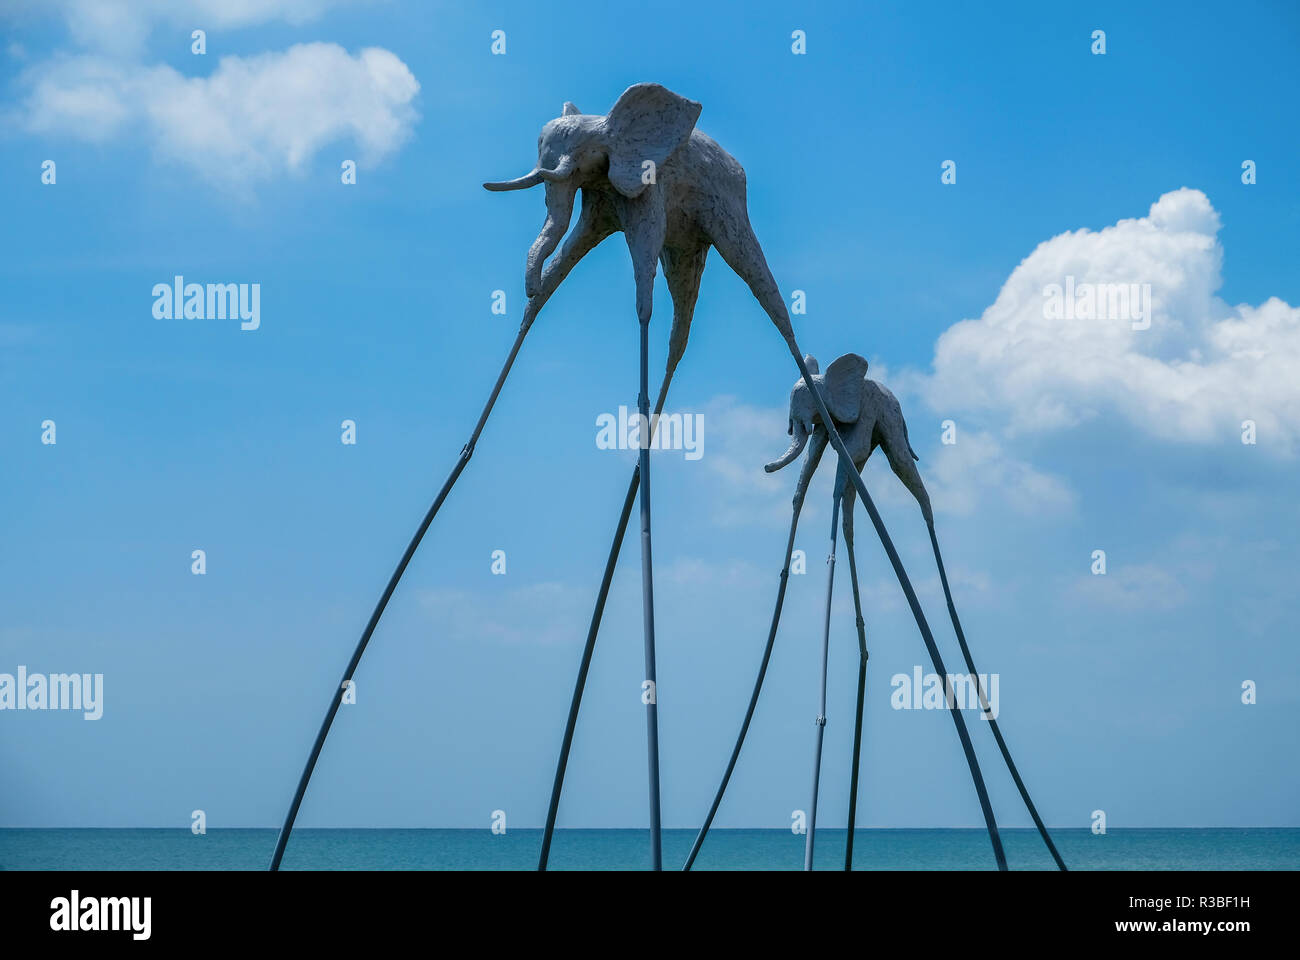 L'installation d'art décoratif inspiré par Dalí ('Éléphants"), pour EPIZODE (ex Kazantip) fest - festival international de musique/art s'est tenue sur l'île de Phu Quoc Vietnam Banque D'Images